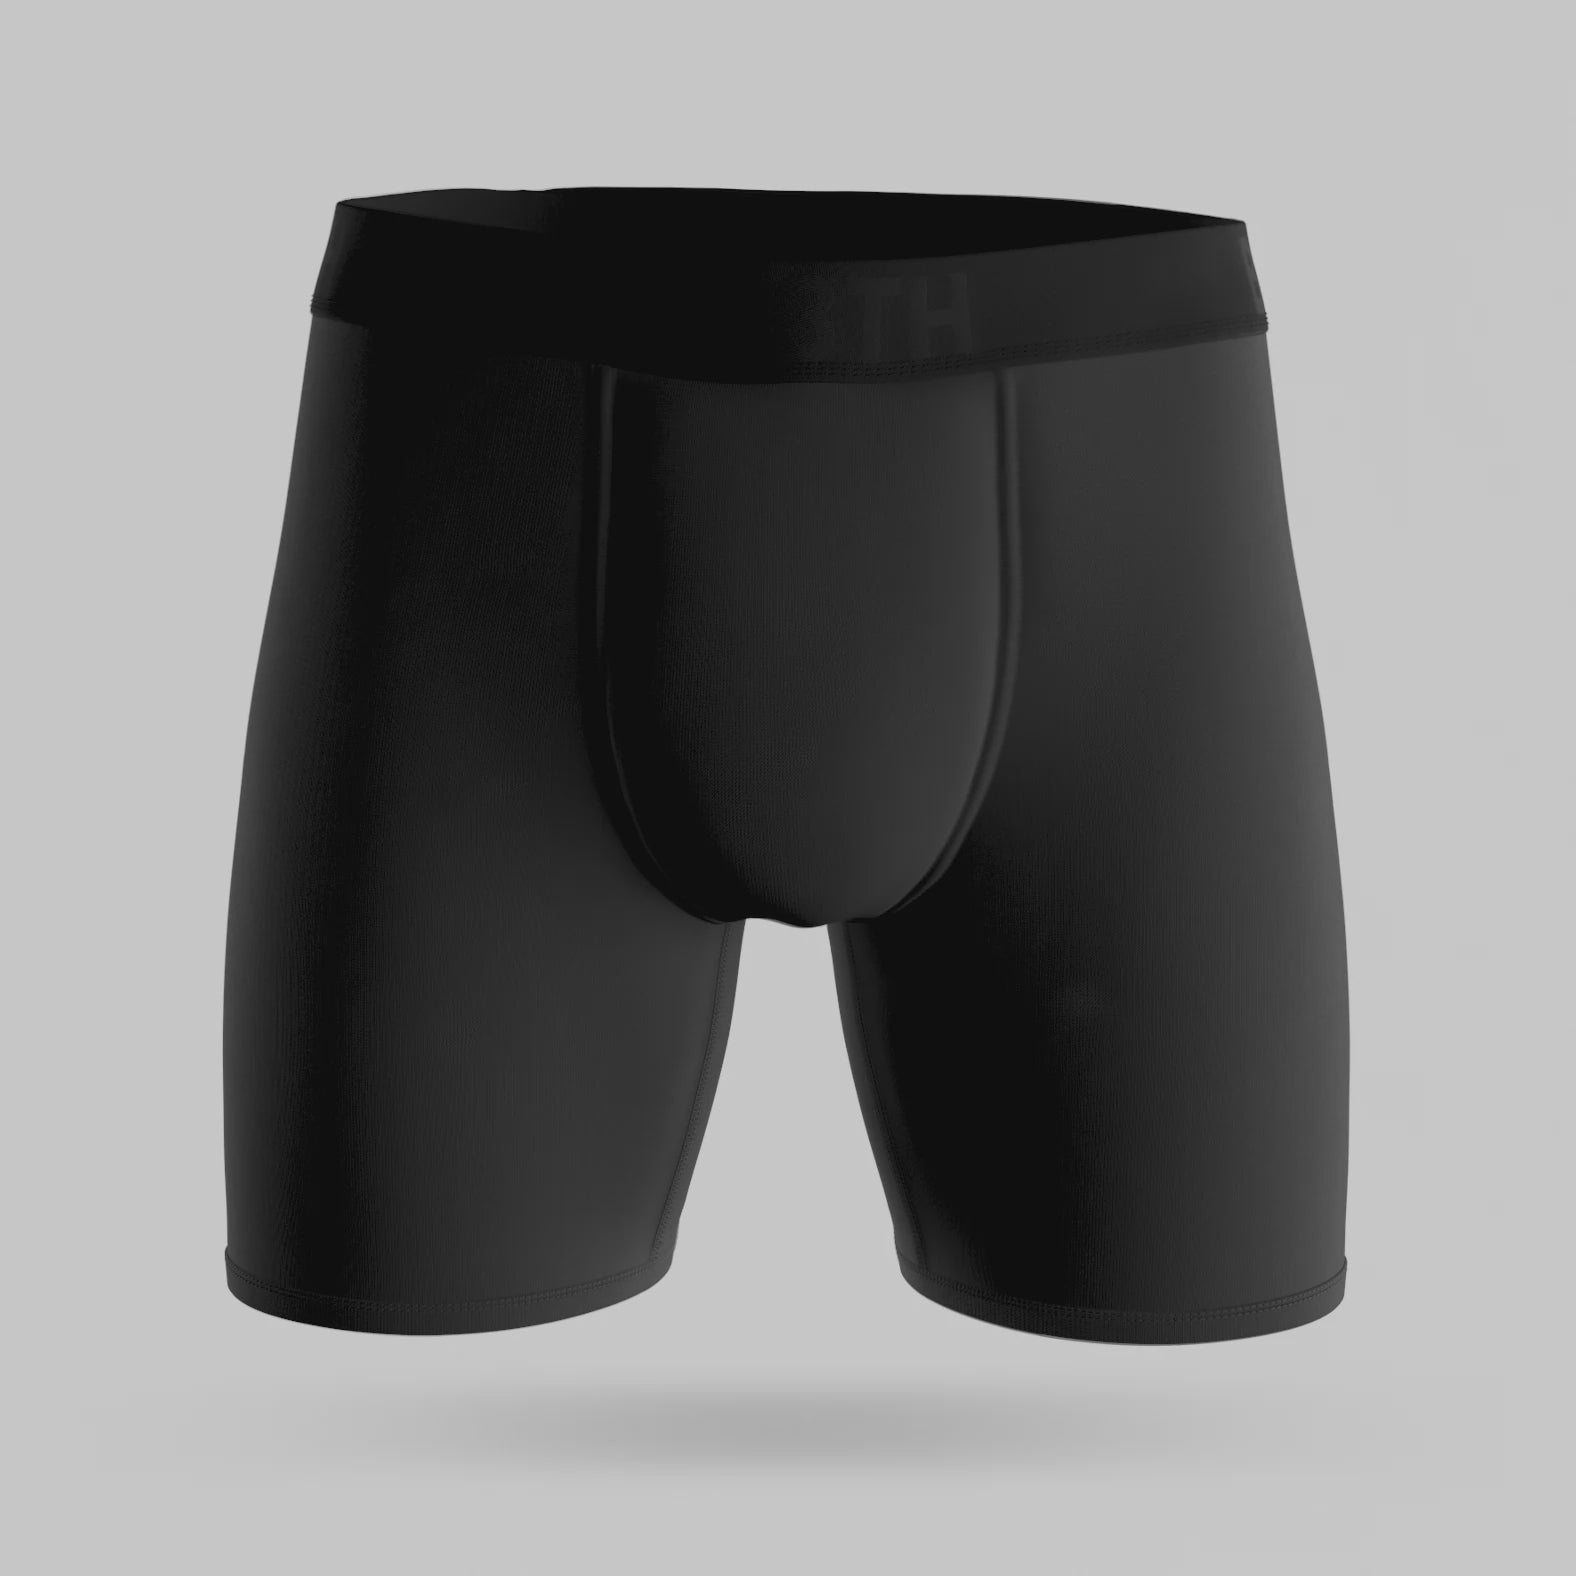 TOP PRO Underwear Briefs - Men's Cotton Stretch Underwear Briefs (Pack of  2) (S, Navy) at  Men's Clothing store